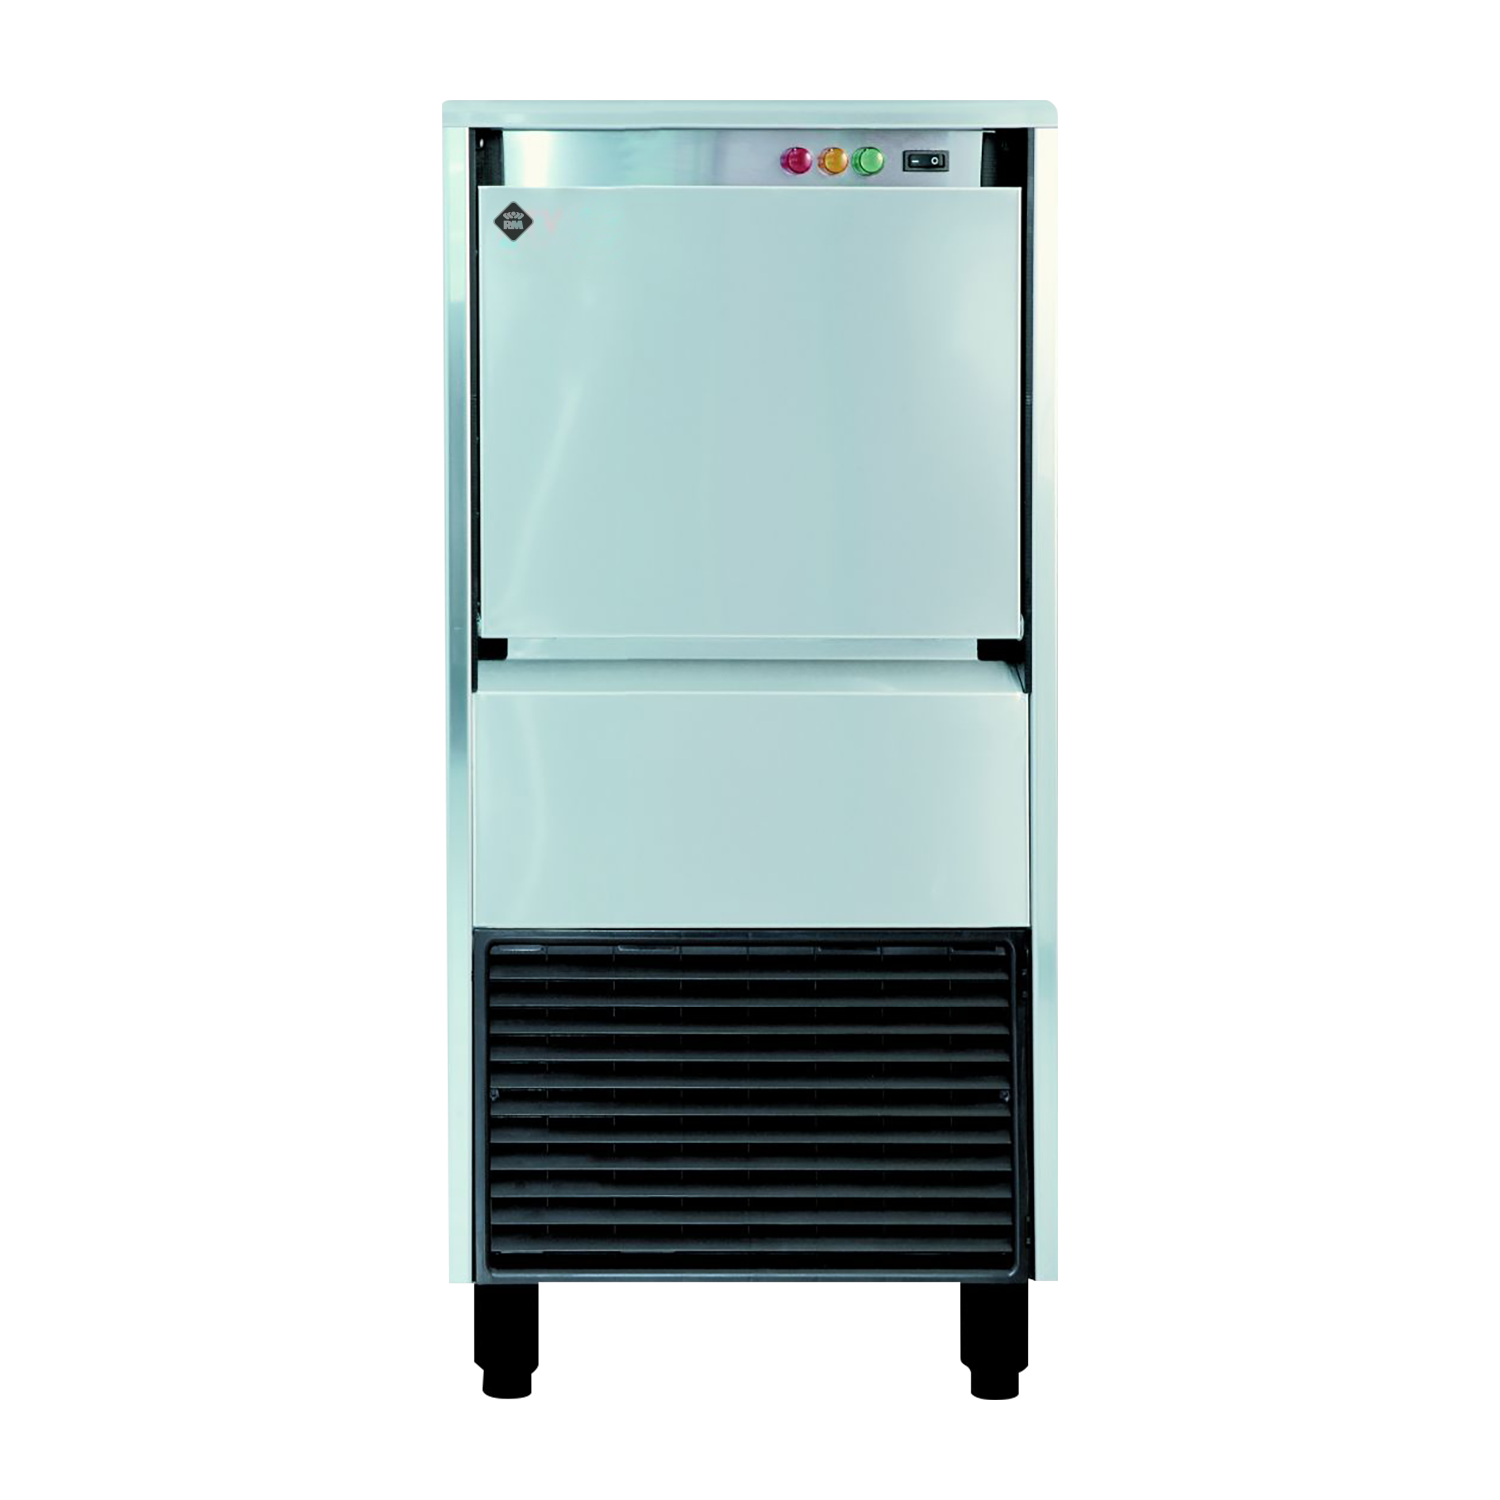 IMD 9020 W - Výrobník ledové drtě chl. vodou 88 kg/24h